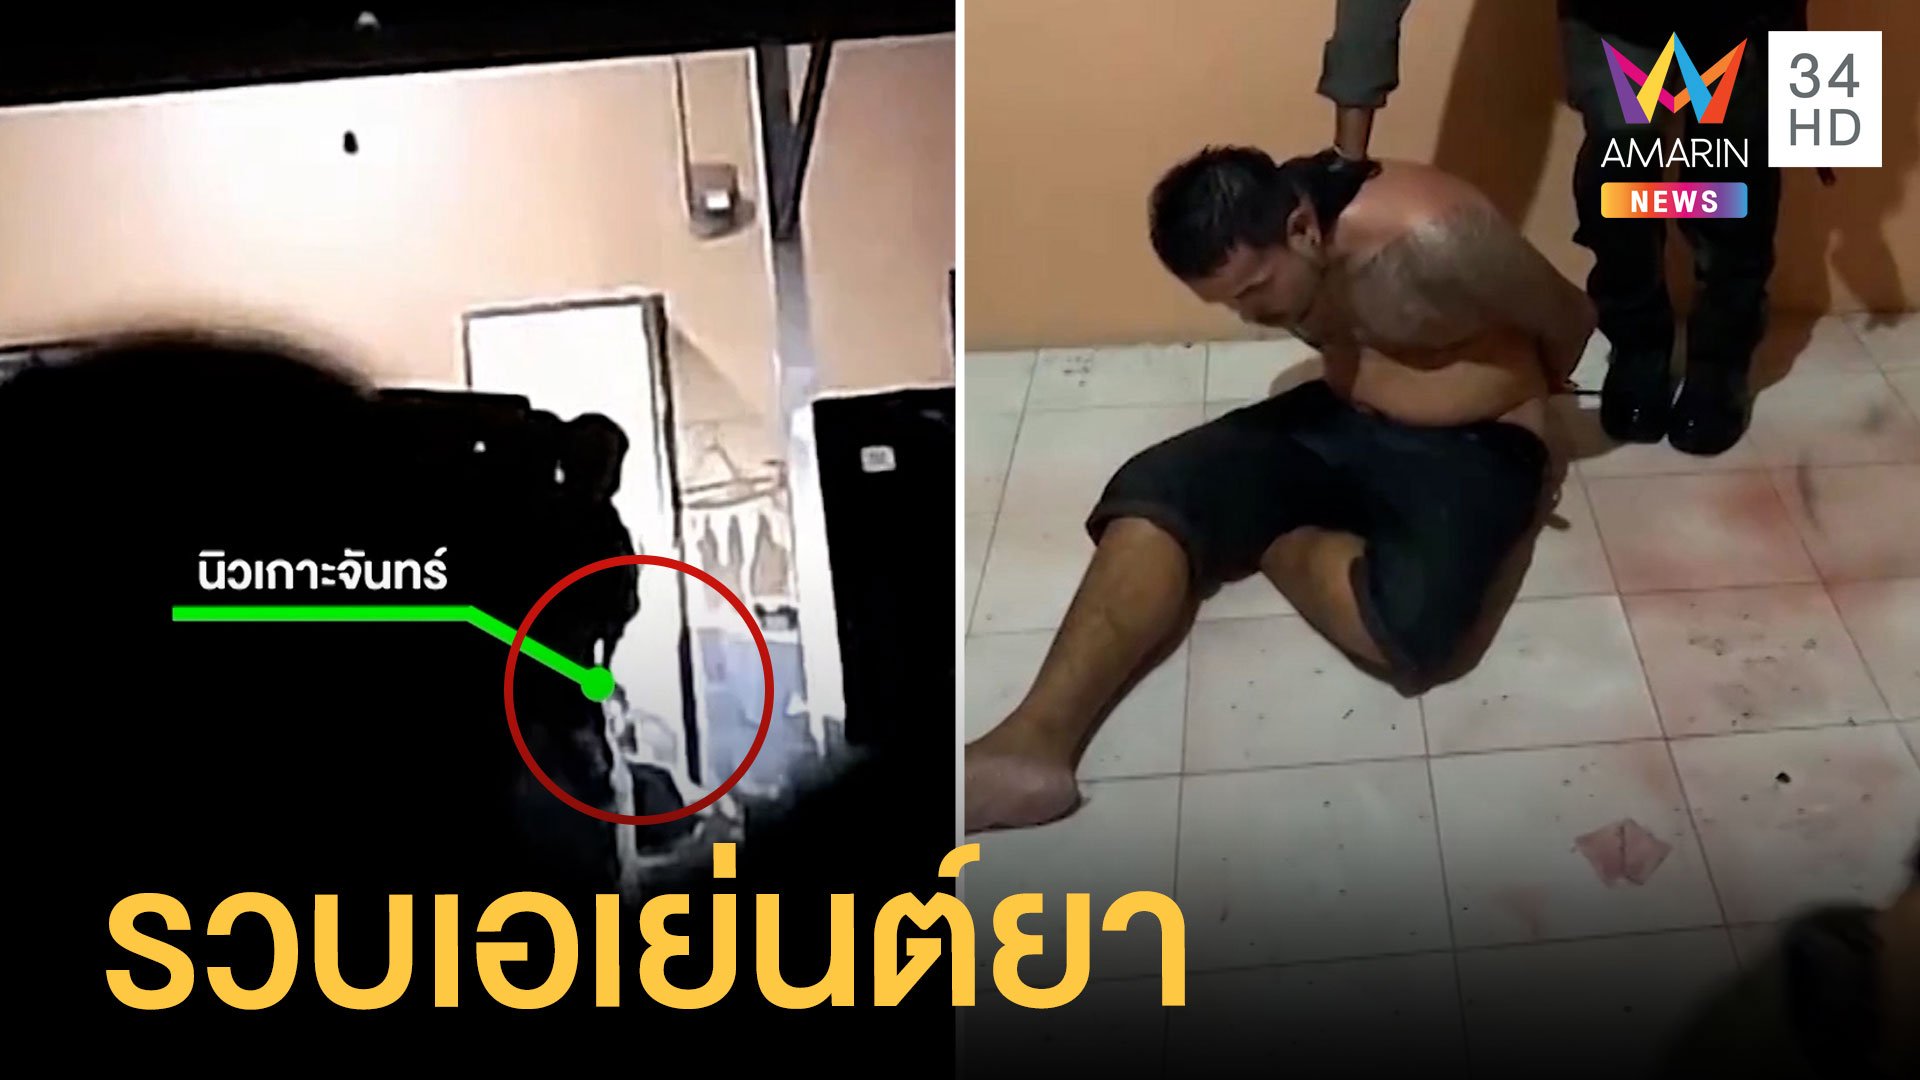 บุกจับ "นิว เกาะจันทร์" นักค้ายาเมืองชล ยิงสู้ ตร.เสียชีวิต | ข่าวเที่ยงอมรินทร์ | 24 มี.ค. 64 | AMARIN TVHD34